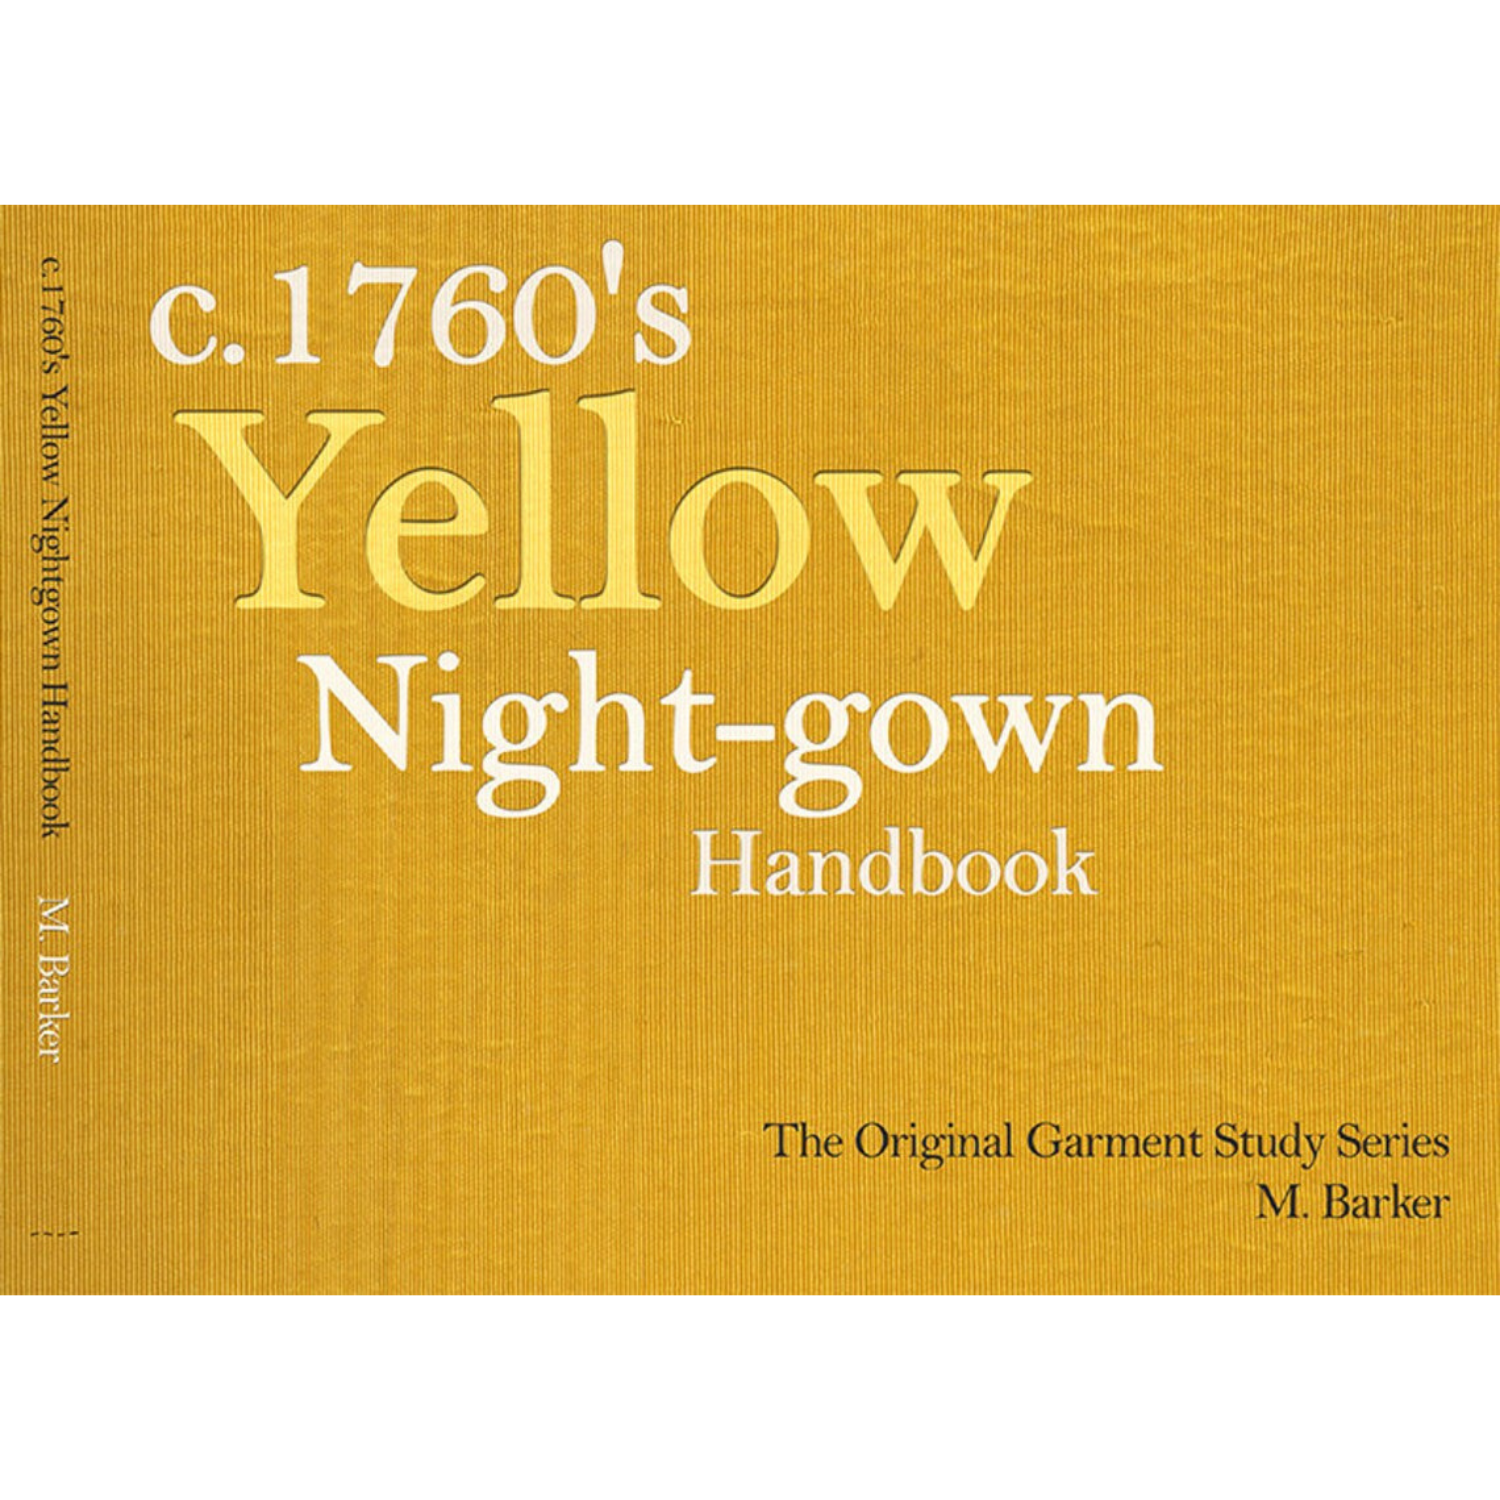 C. 1760s Yellow Night-gown Handbook